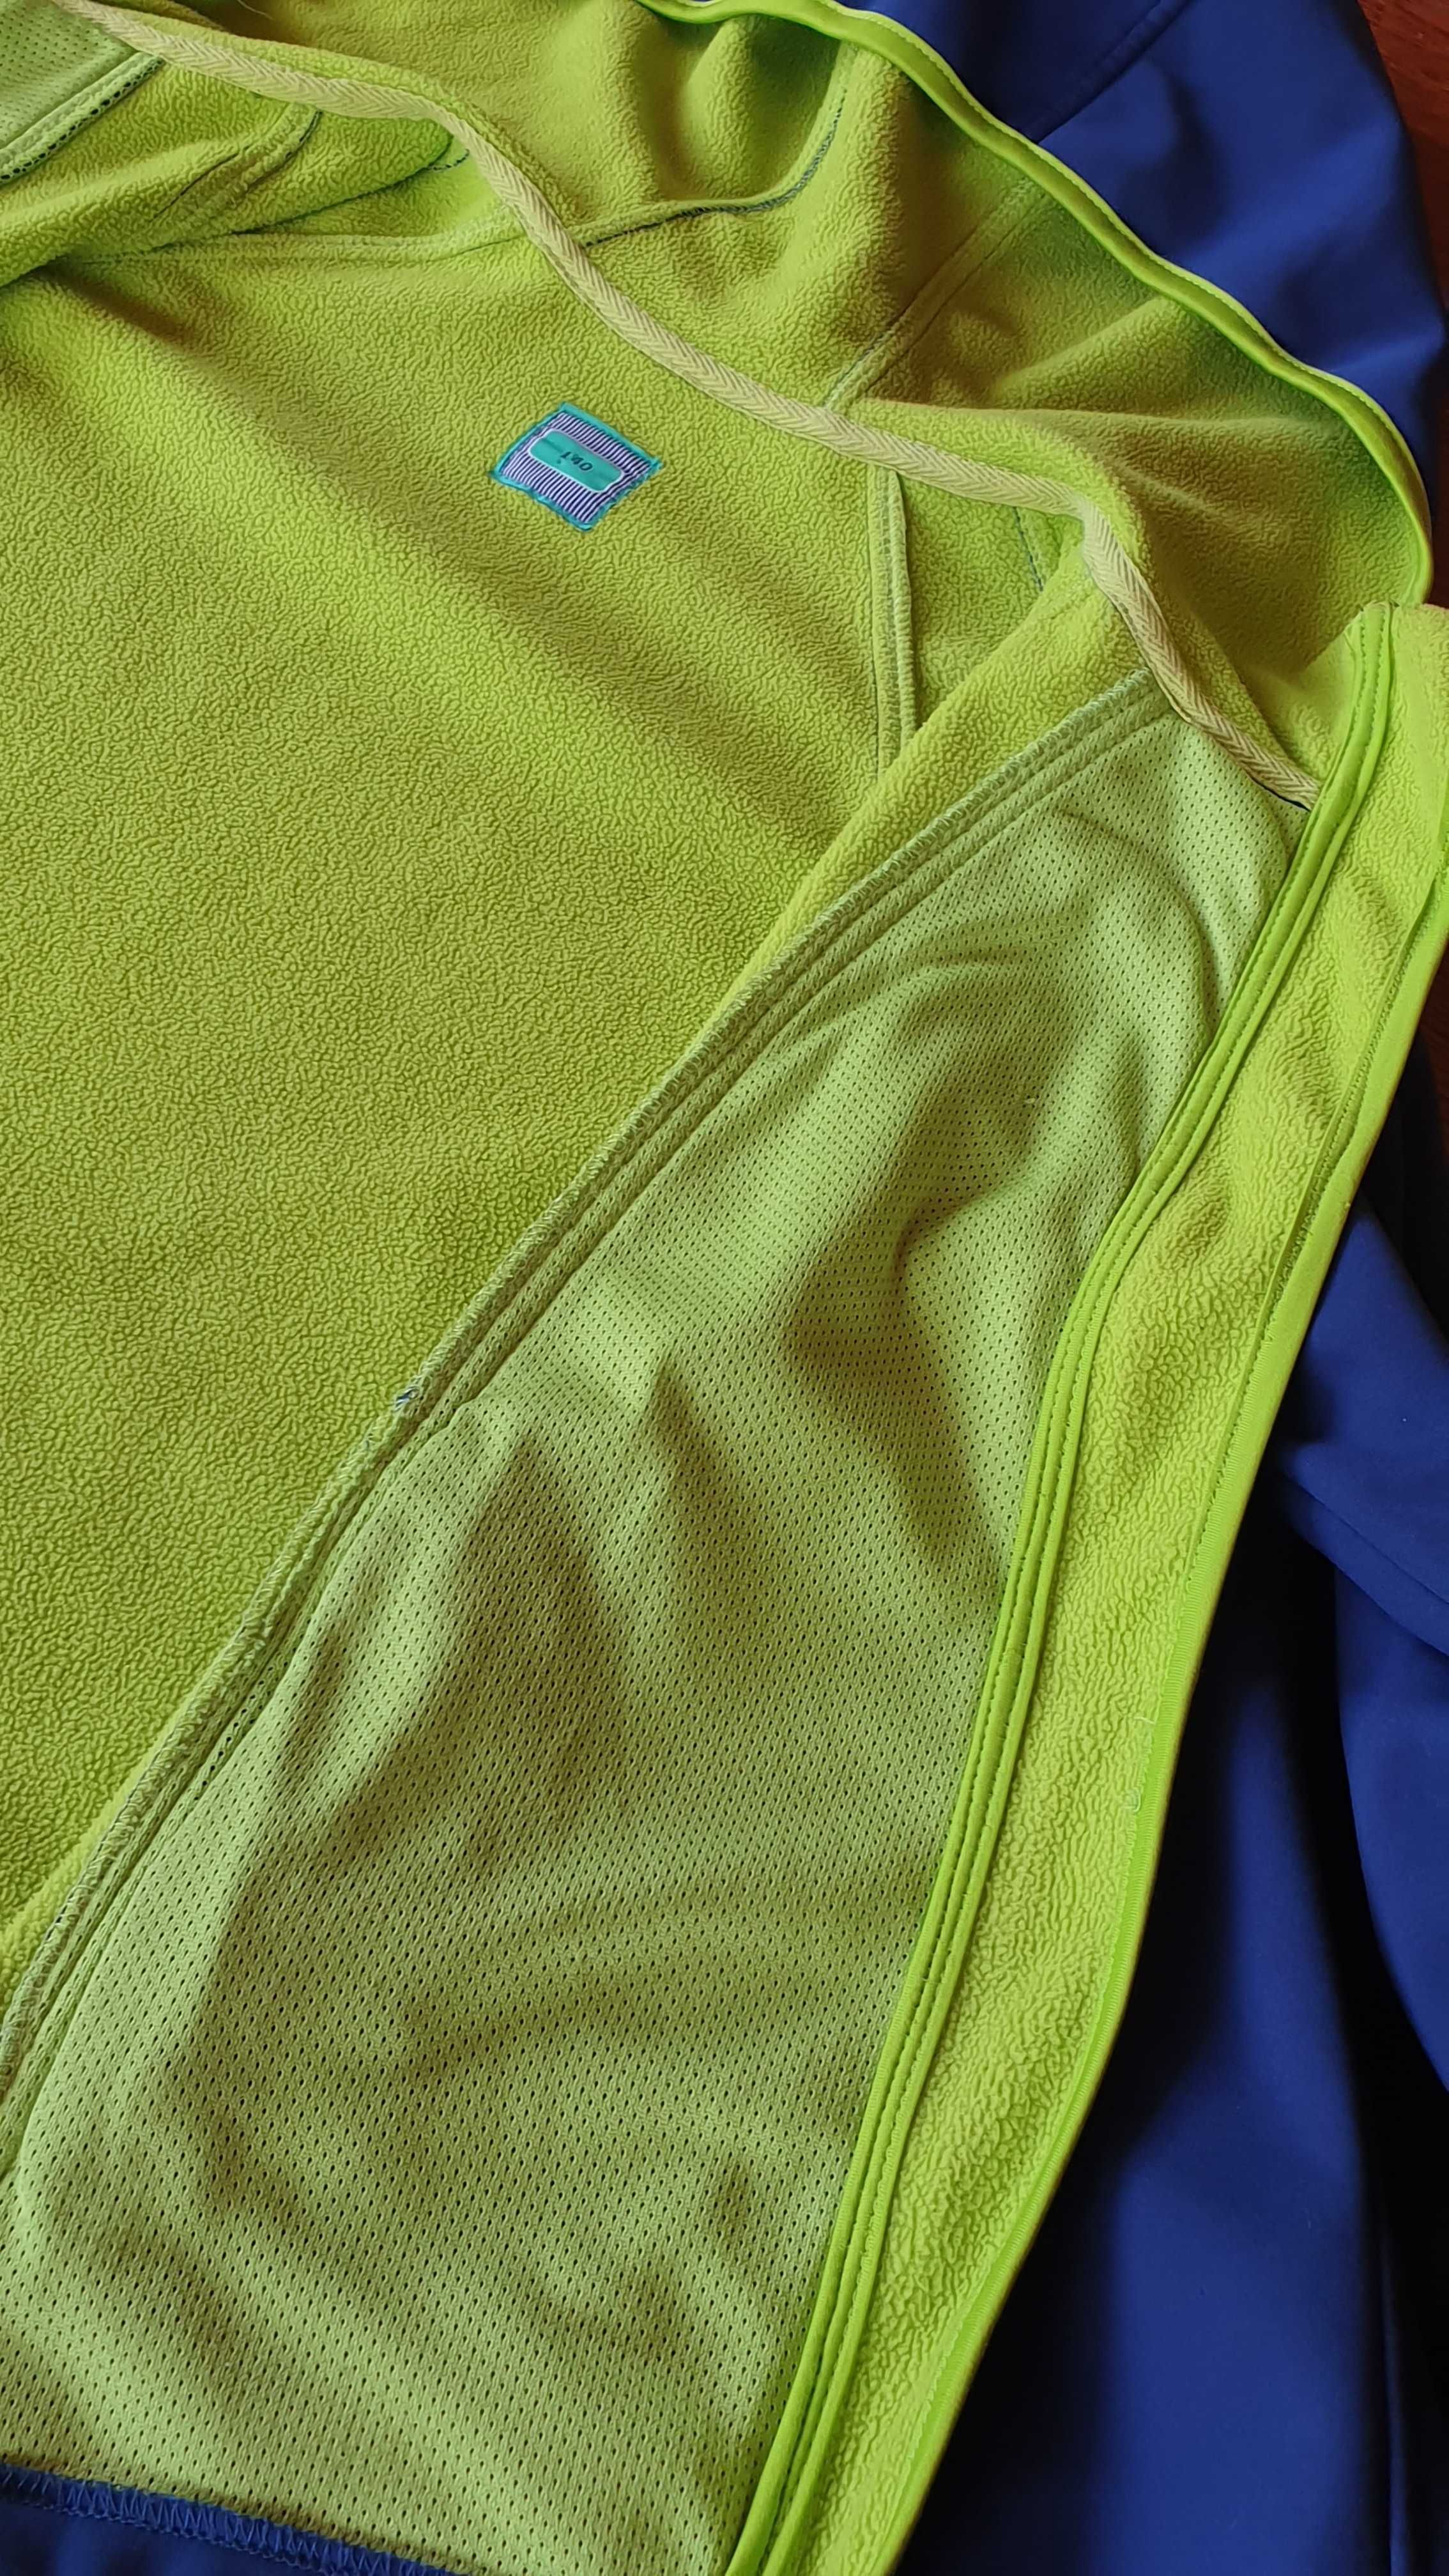 Bluza z kapturem, kurtka - 140 cm